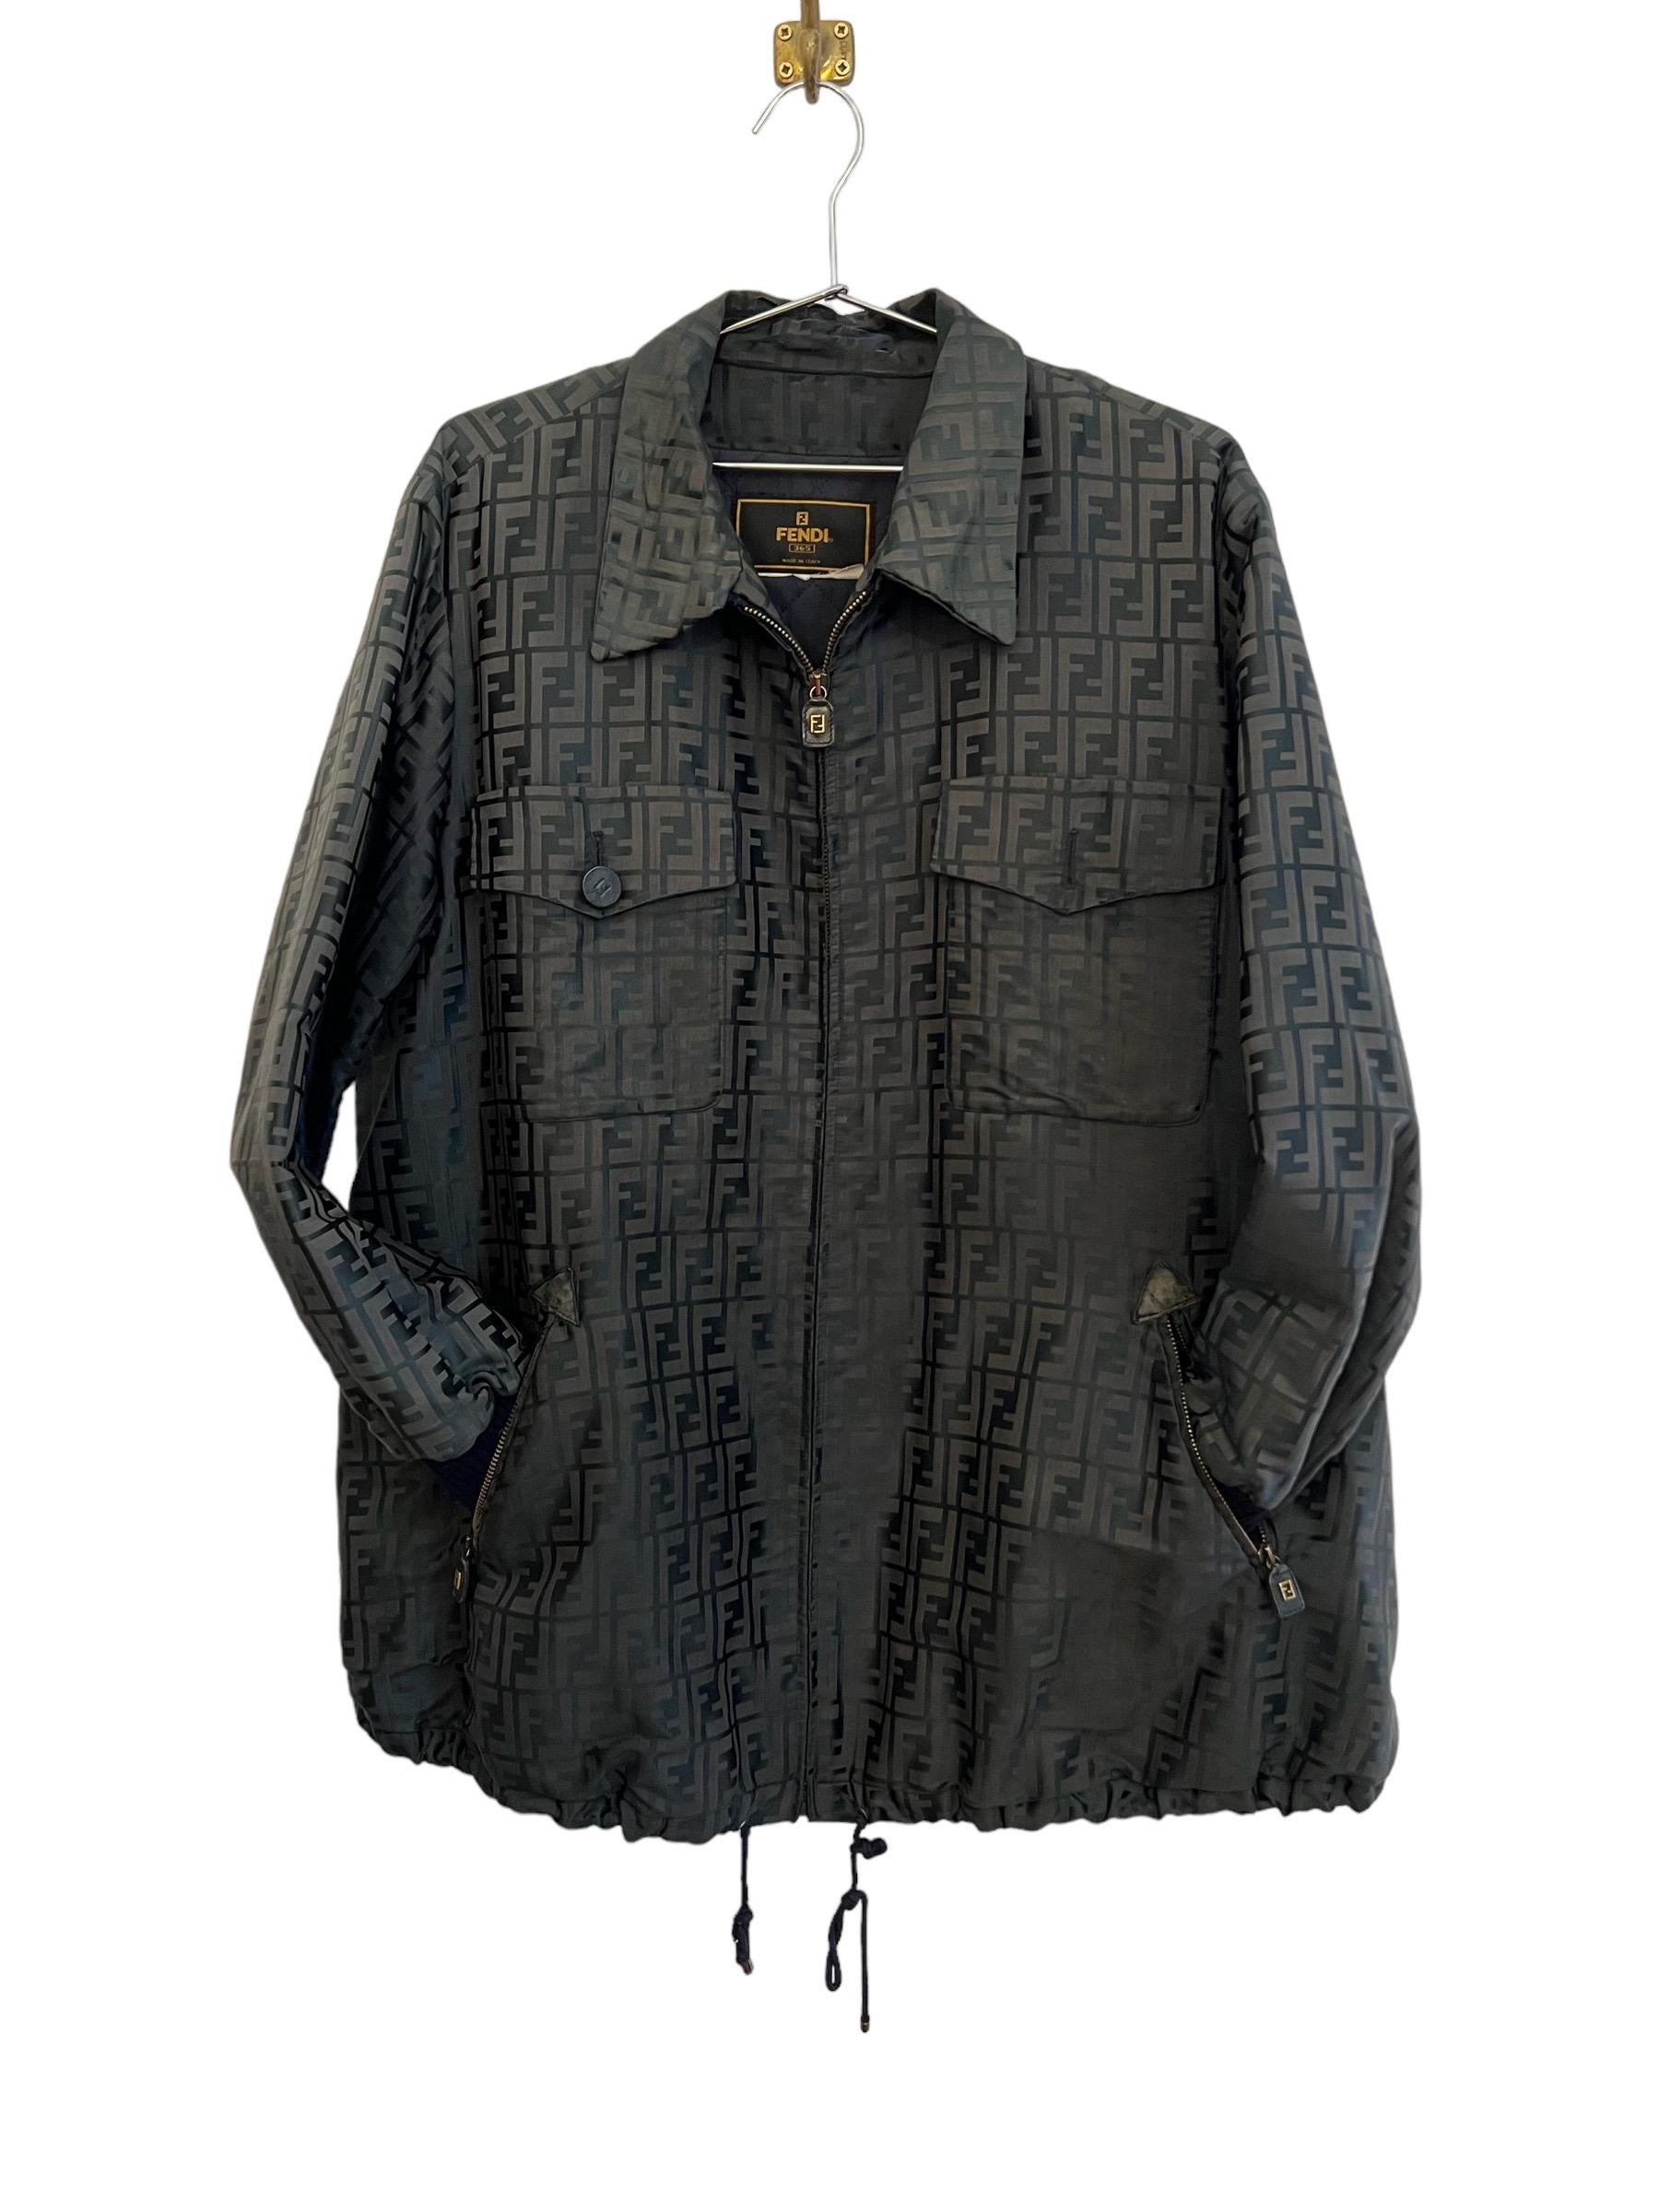 Vintage FENDI Jacquard FF Jacquard Zucca Jacket Coat For Sale 3